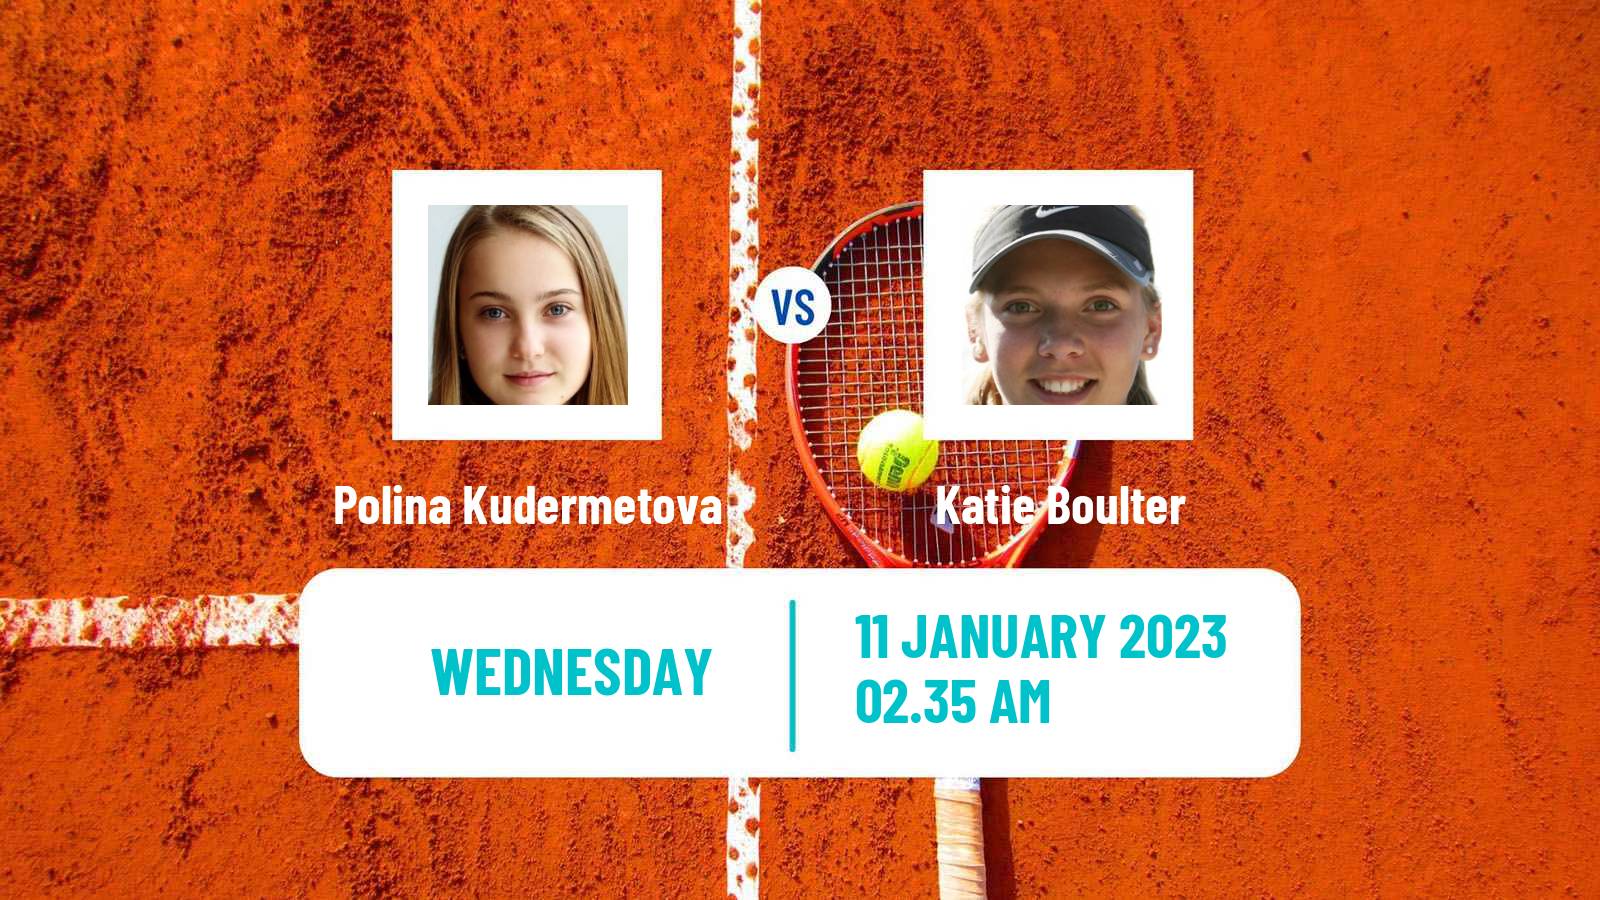 Tennis WTA Australian Open Polina Kudermetova - Katie Boulter